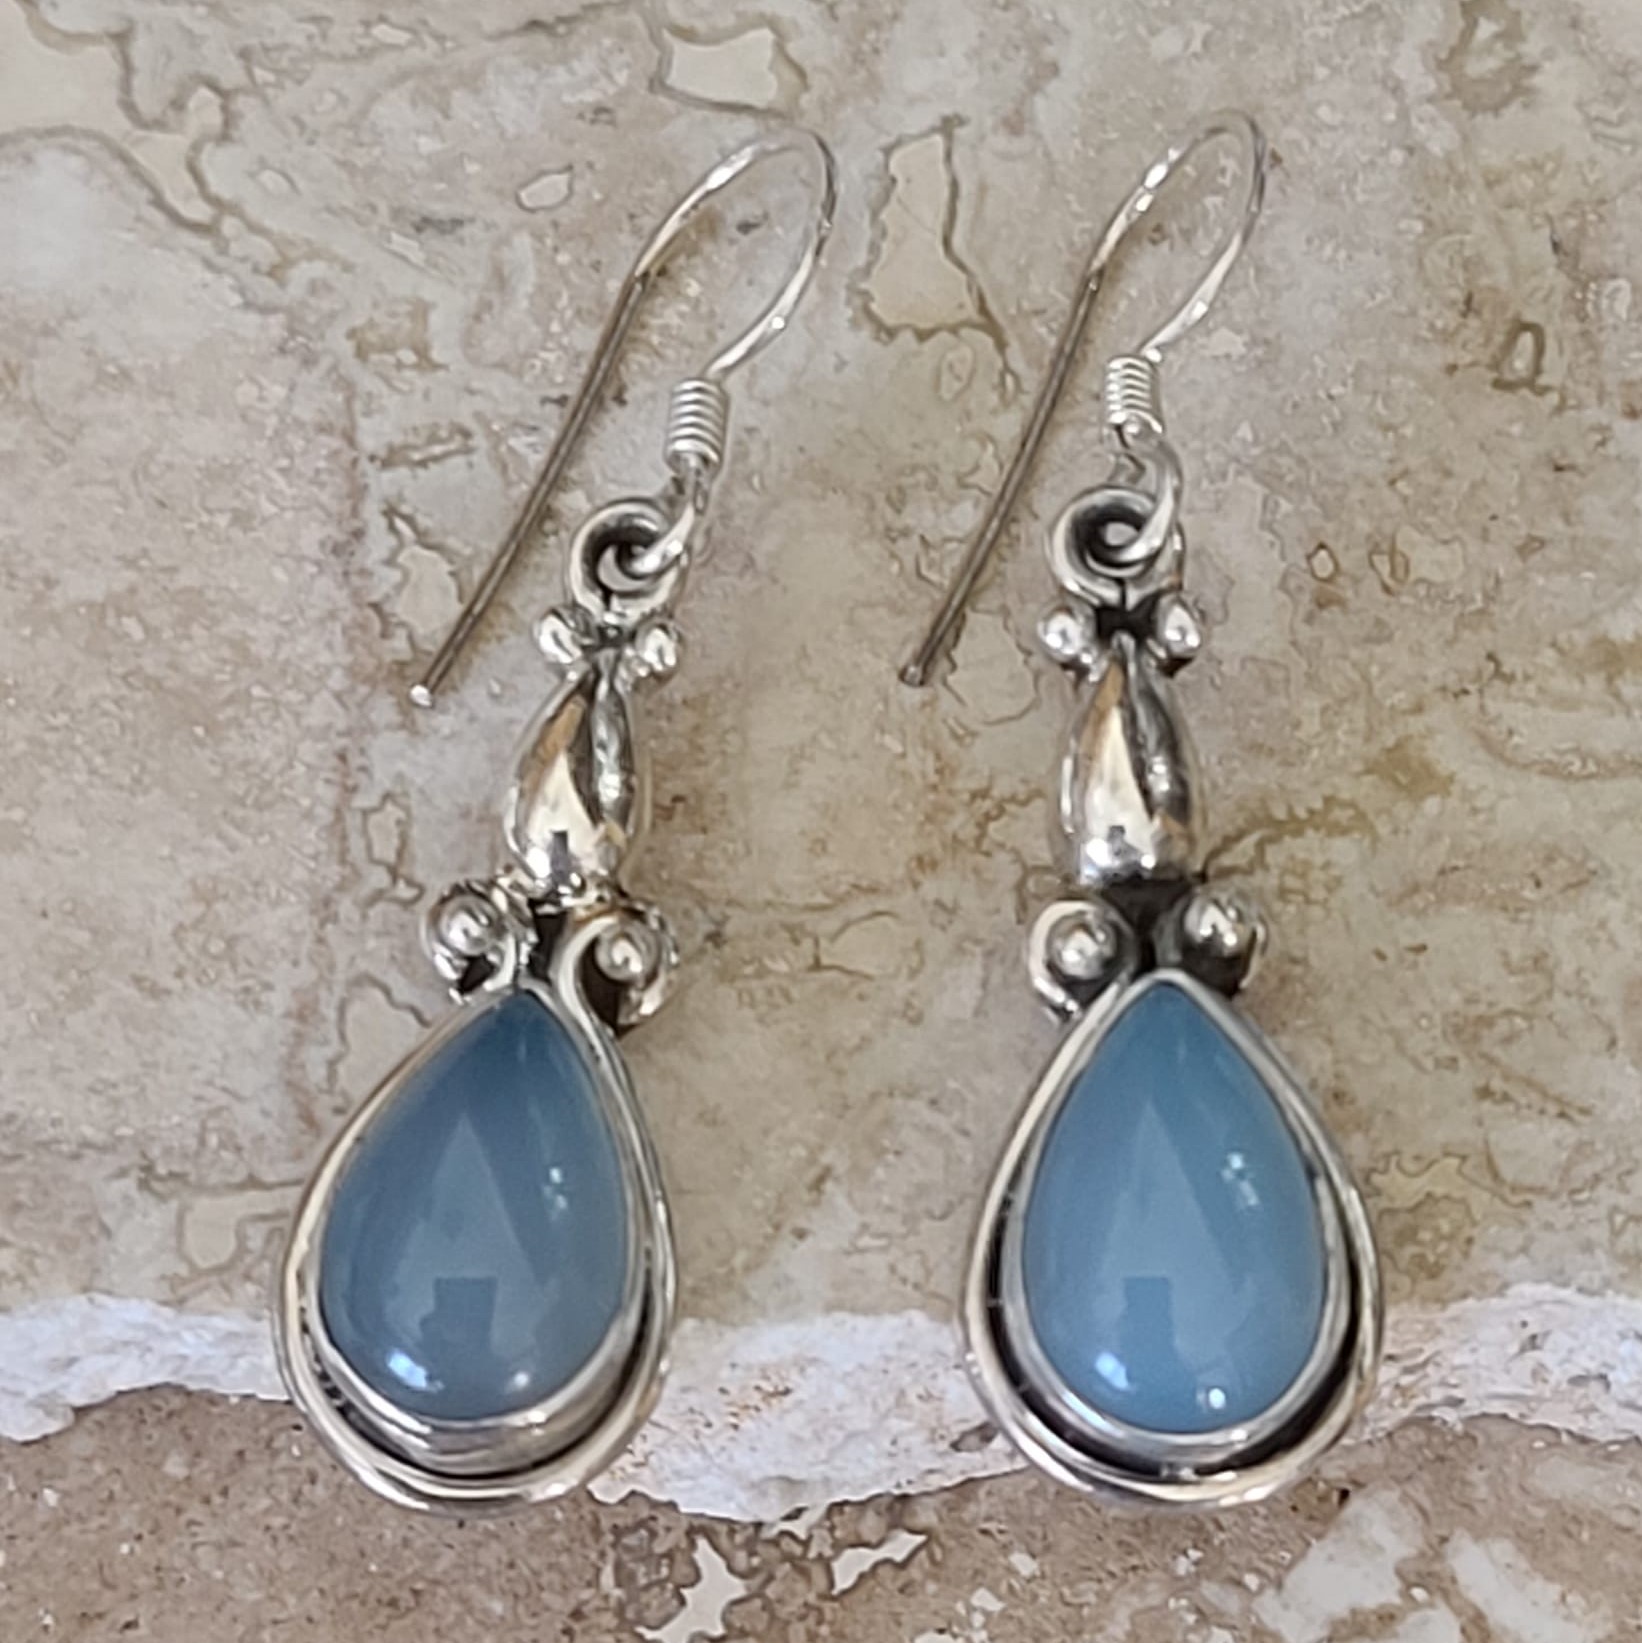 Blue Chalcedony Gemstone & Sterling Silver Earrings